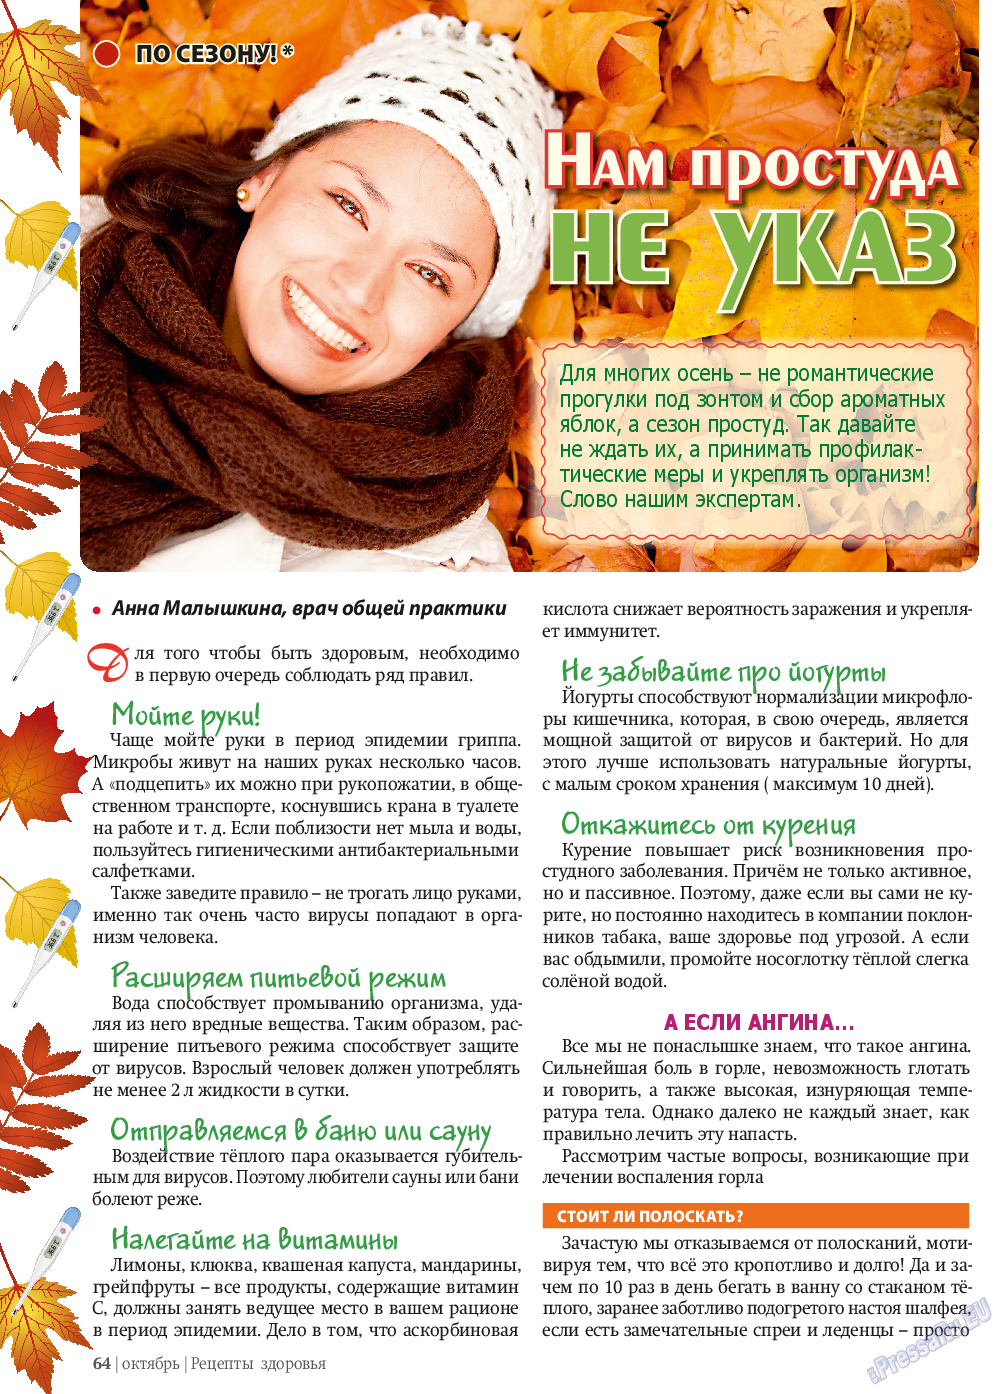 Рецепты здоровья, журнал. 2013 №10 стр.64